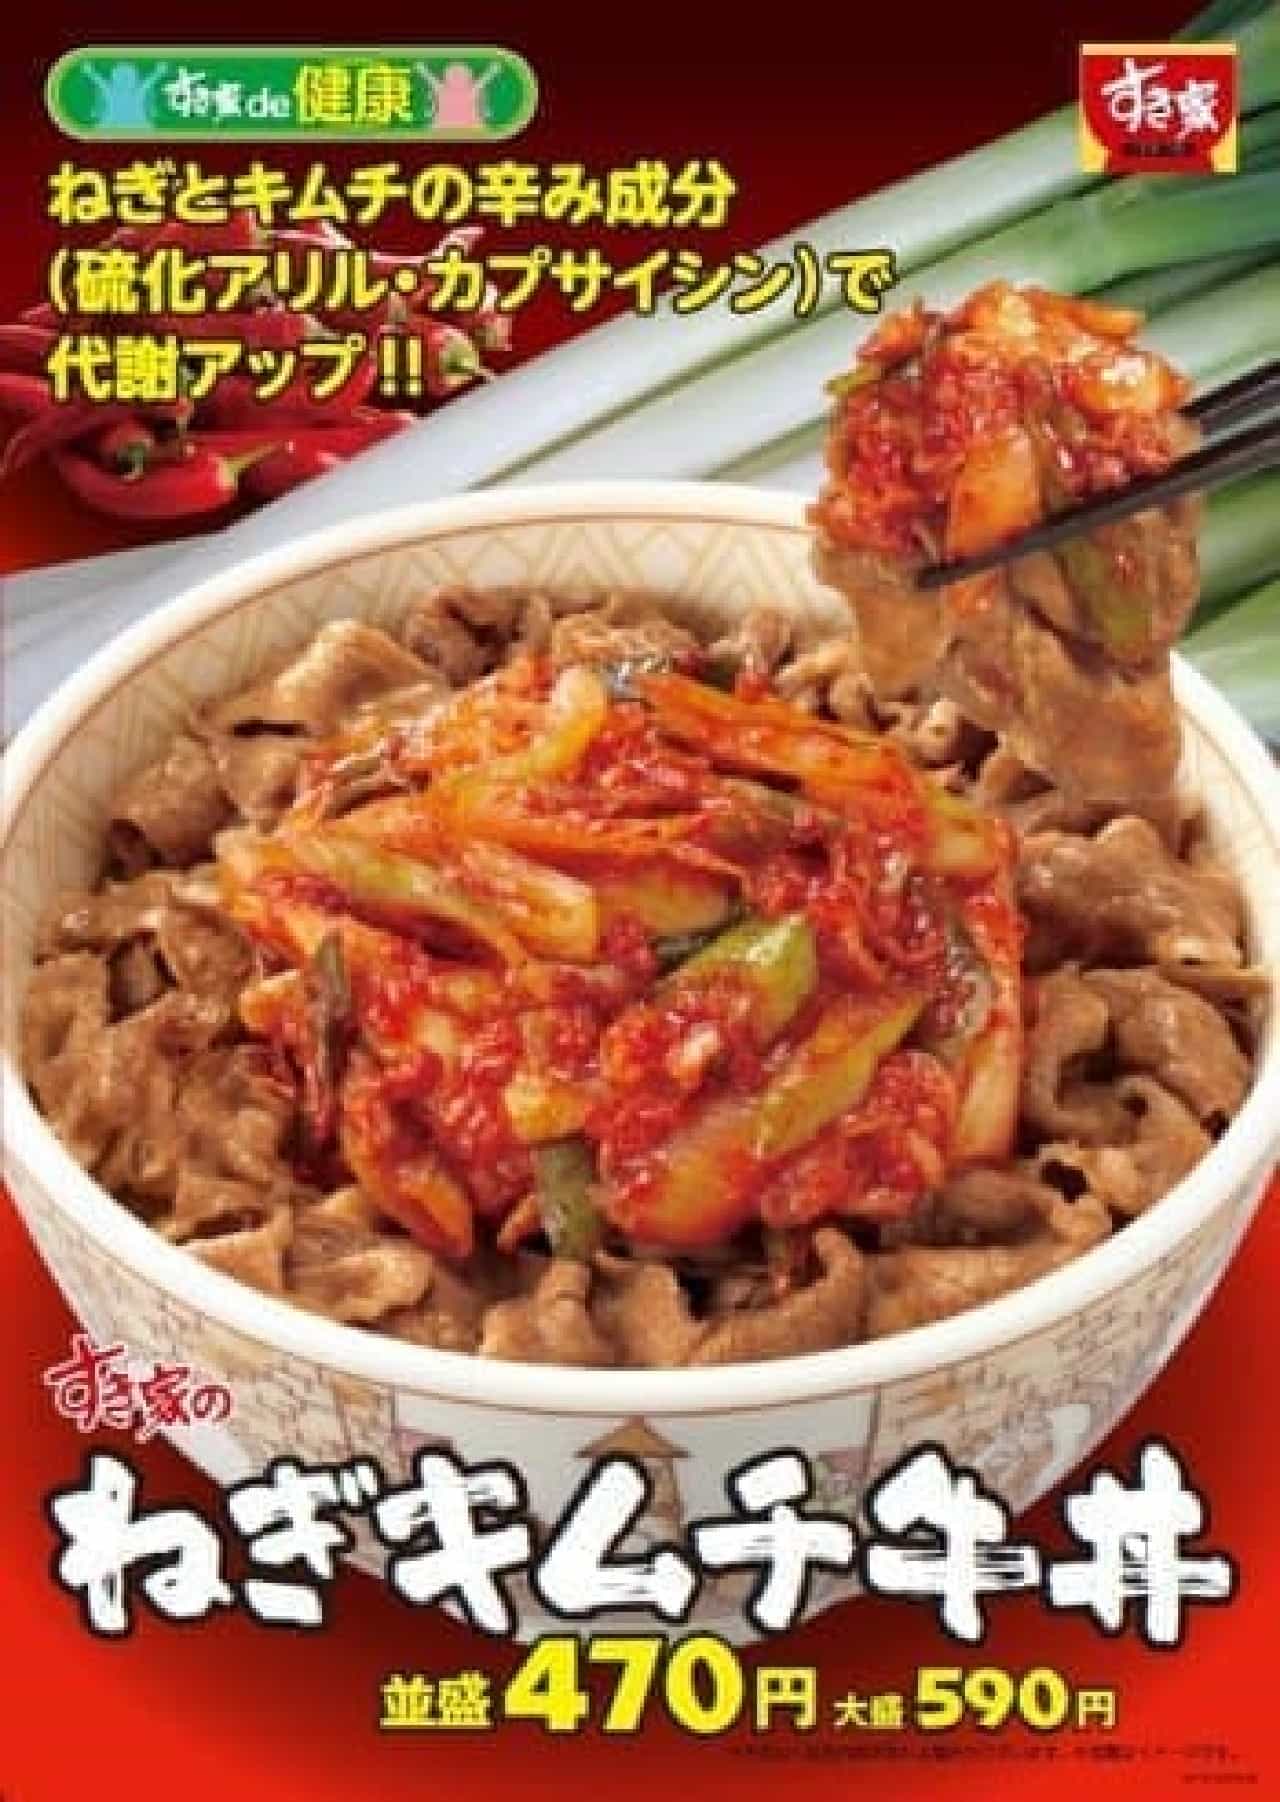 Sukiya "Green onion kimchi beef bowl"